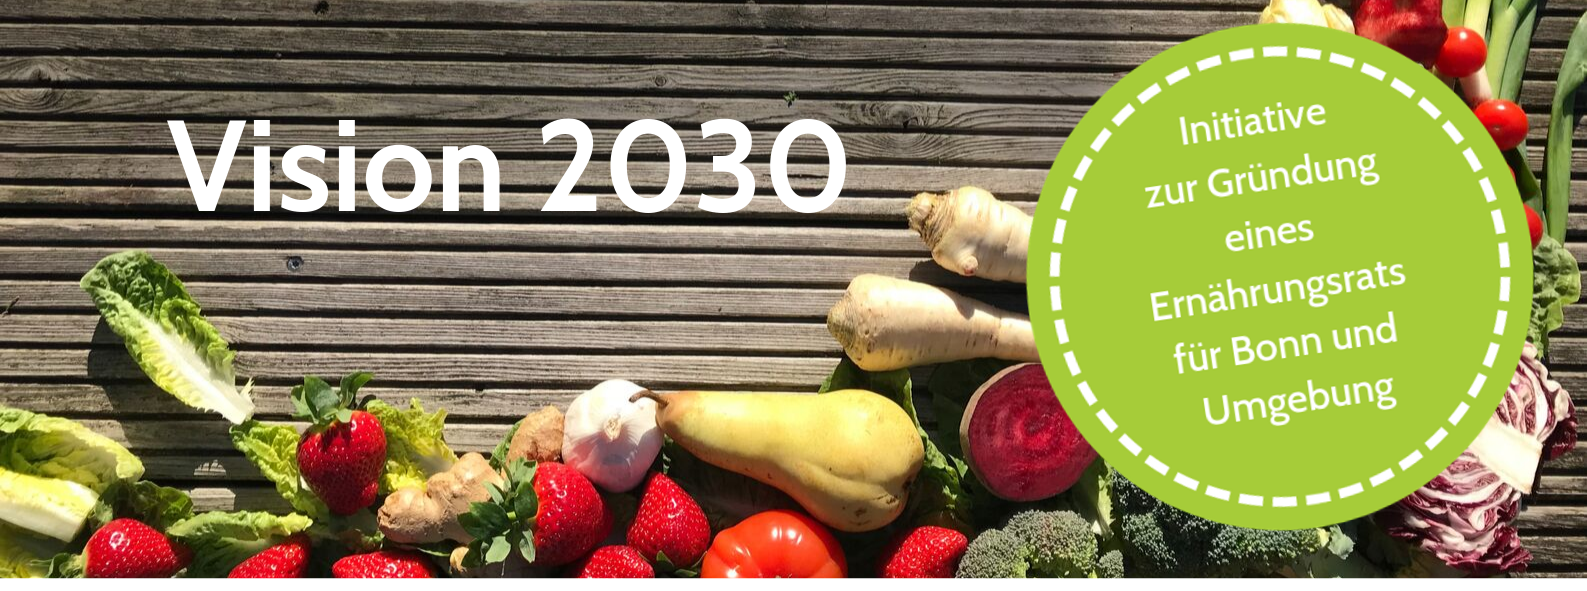 Vision 2030 der Initiative zur Gründung eines Ernährungsrates für Bonn und Umgebung